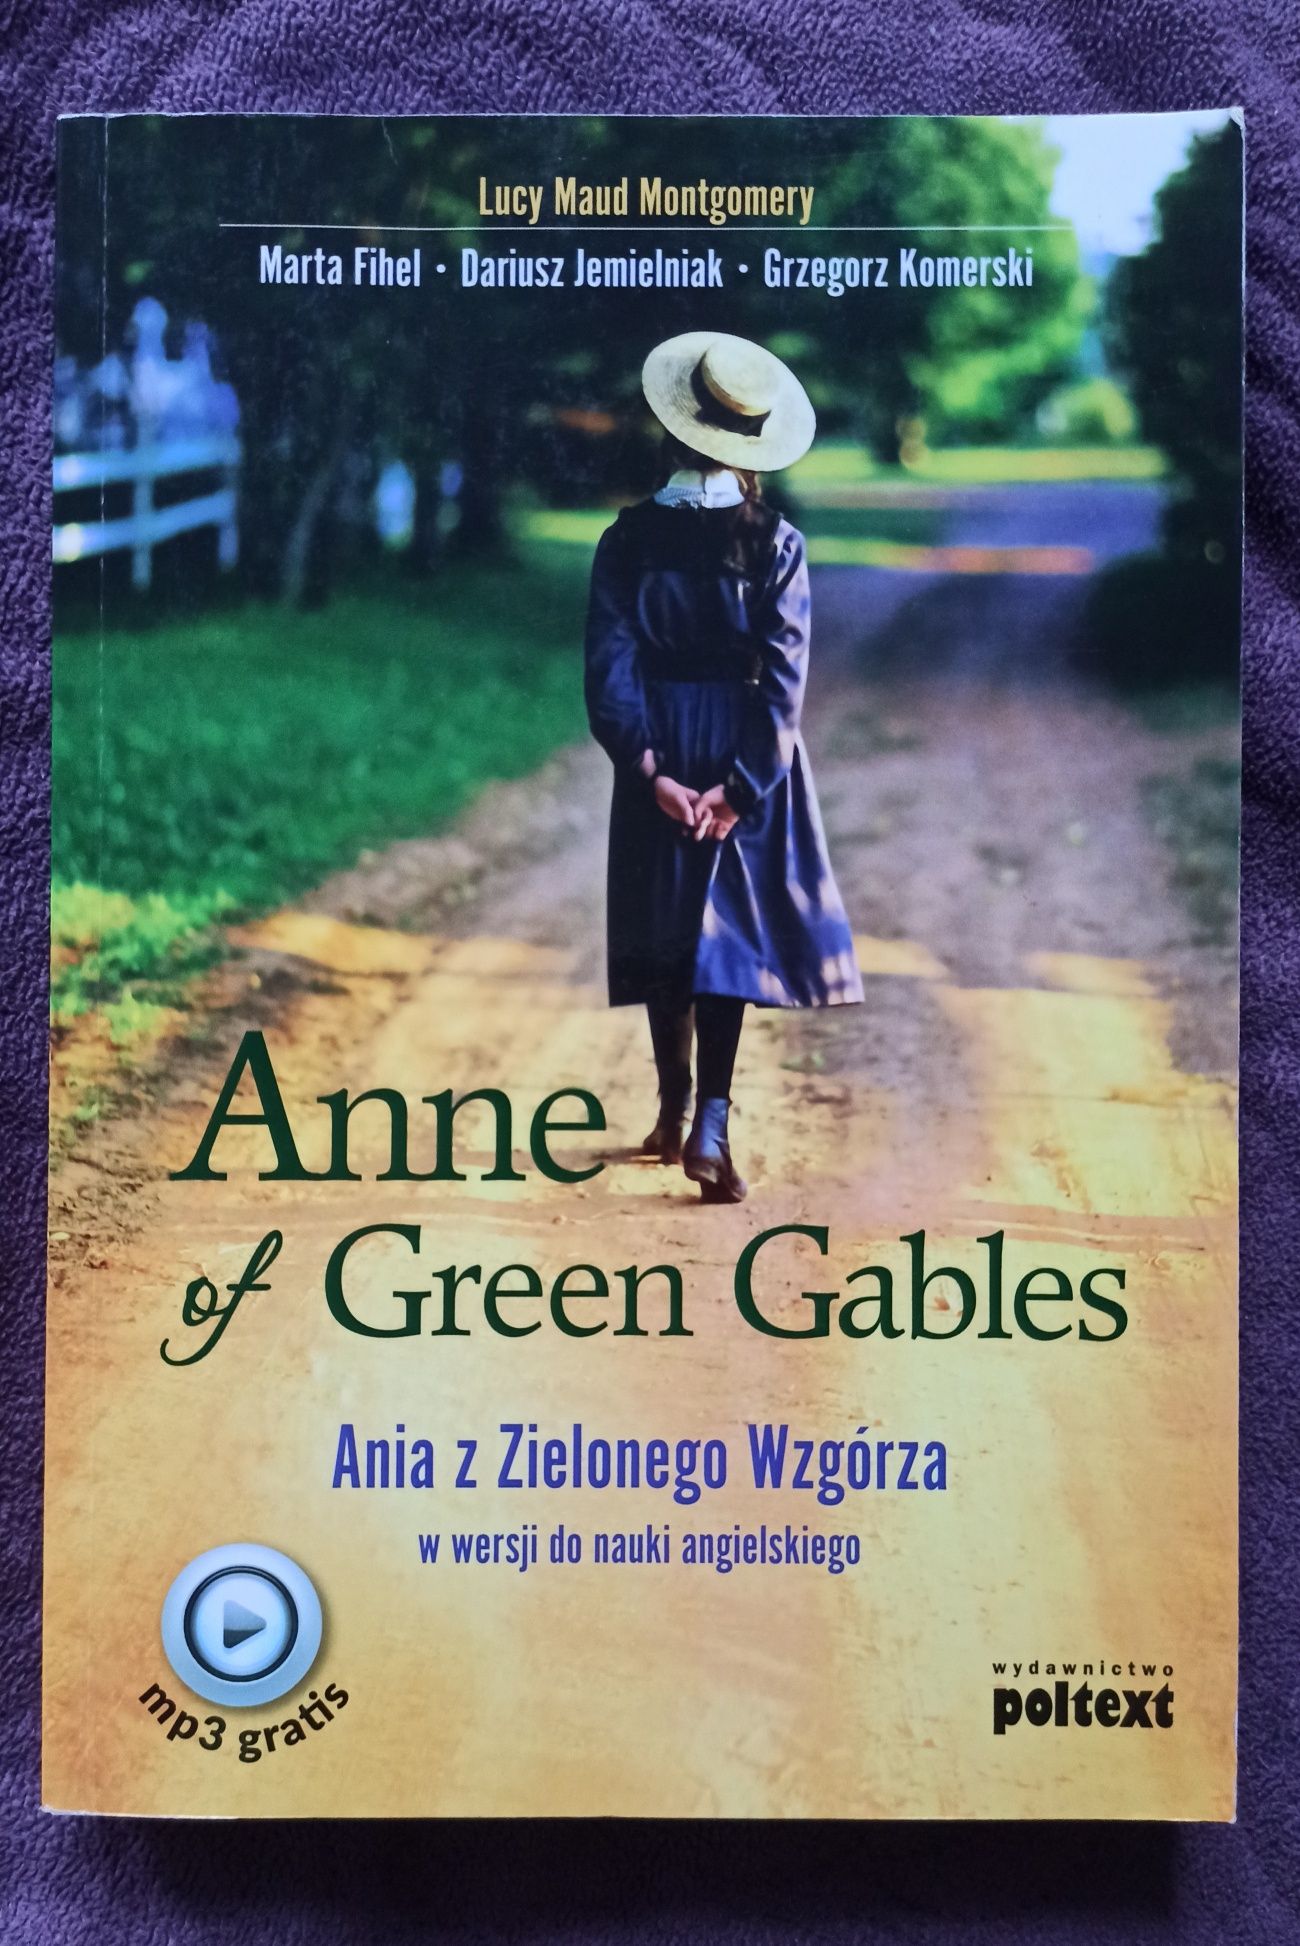 Annie of Green Gables - książka anglojęzyczna